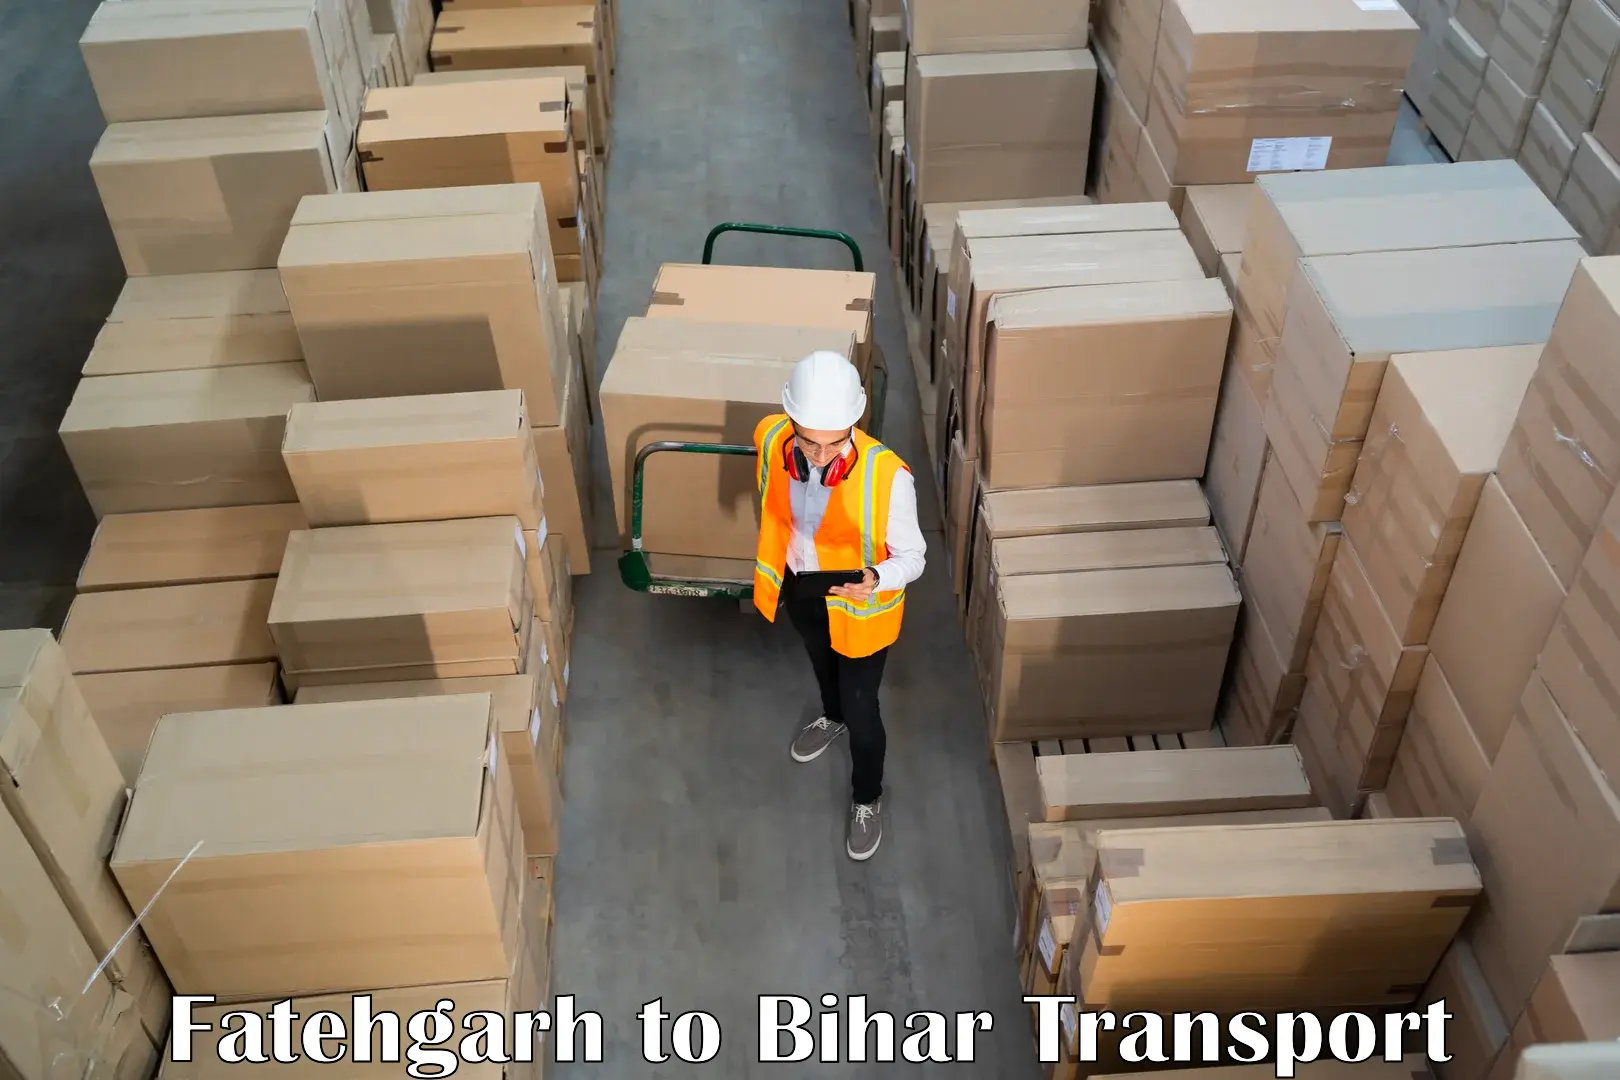 Shipping partner Fatehgarh to Jalalgarh